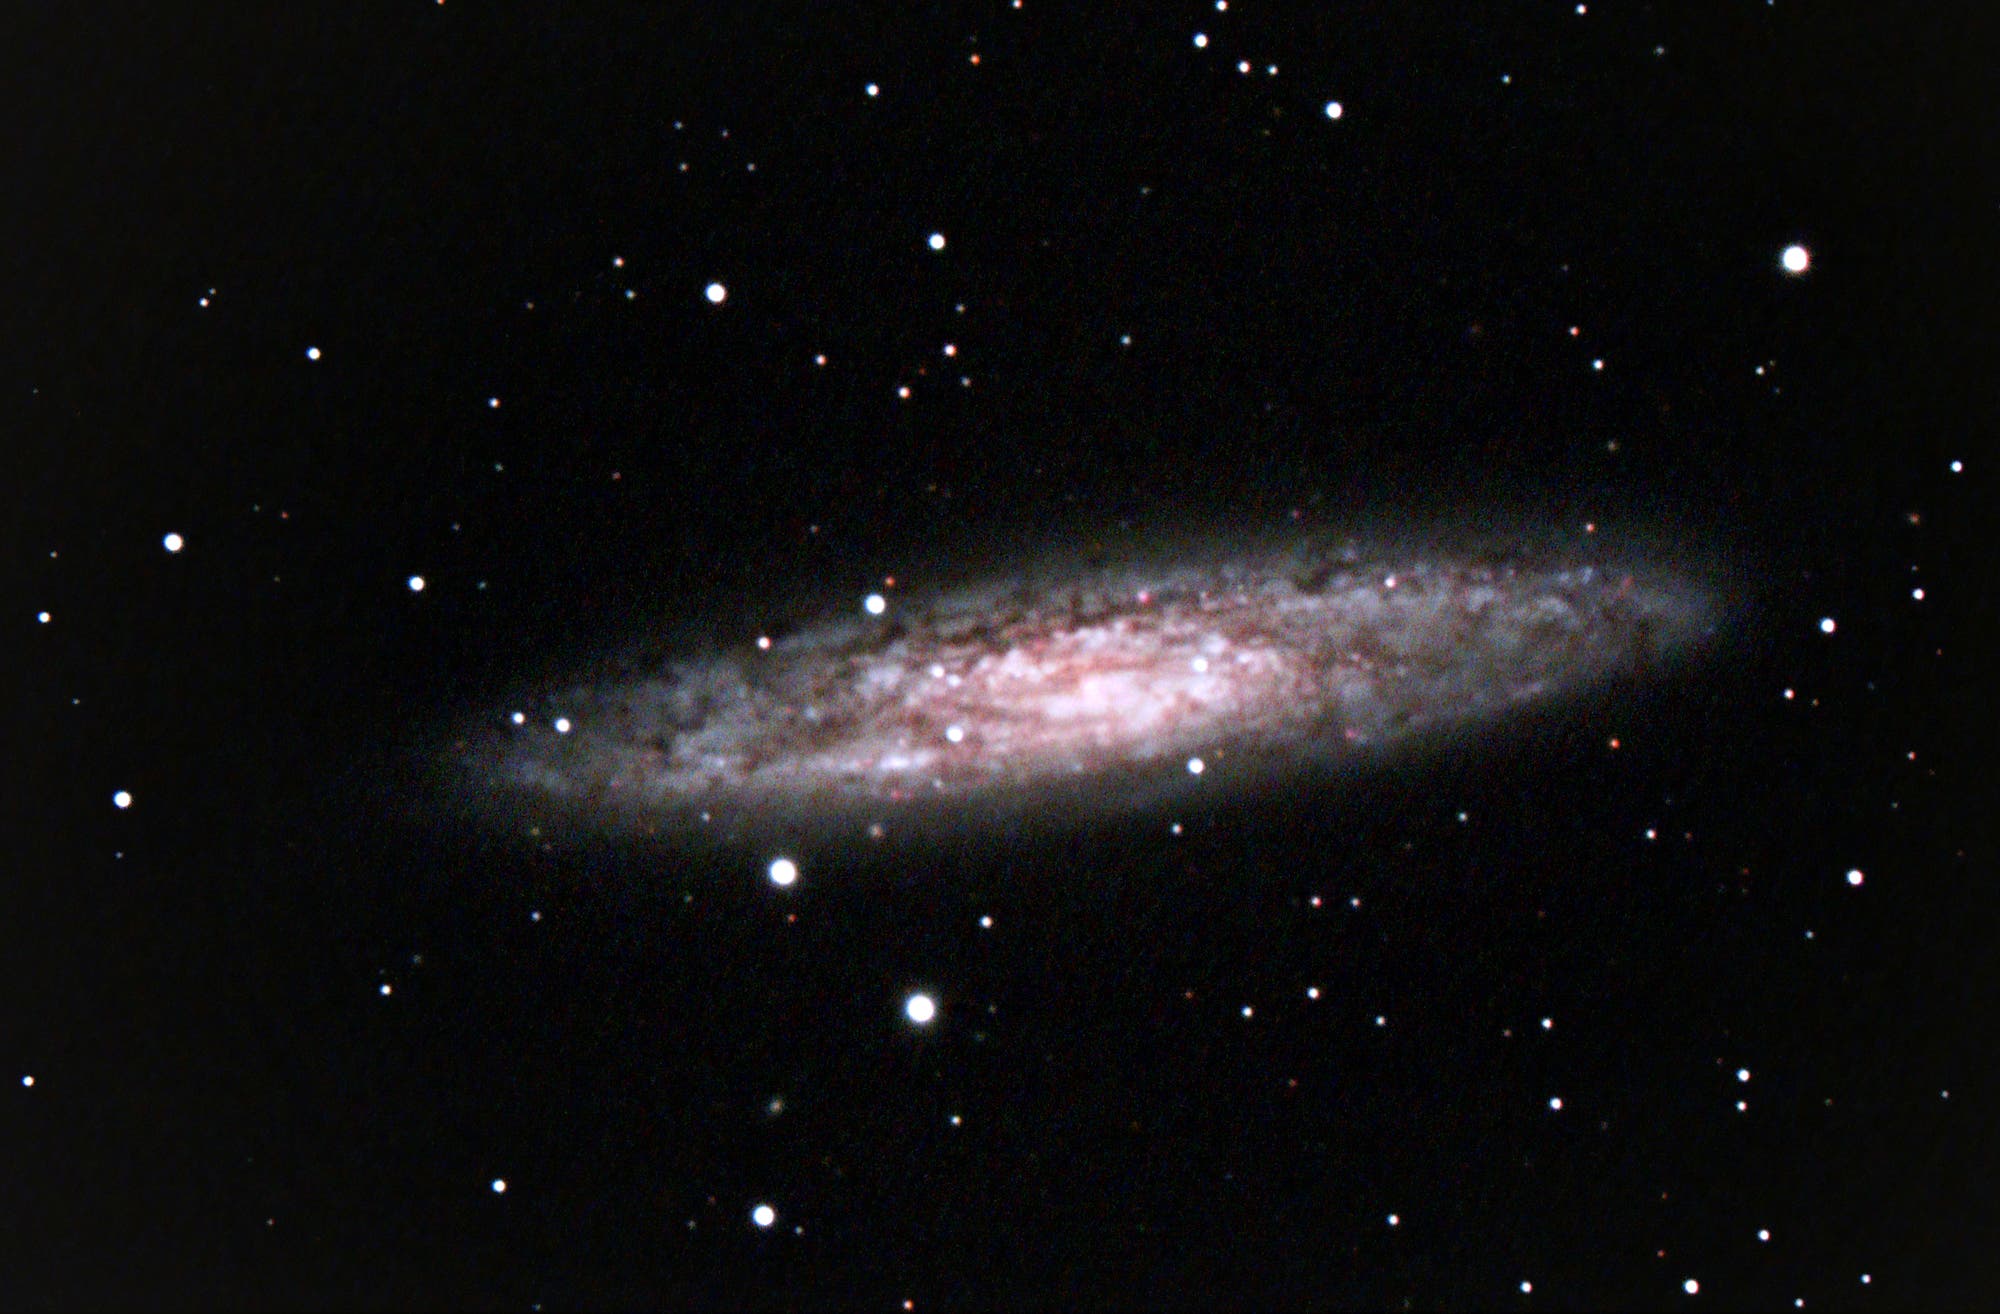 NGC 253 Sculptorgalaxie